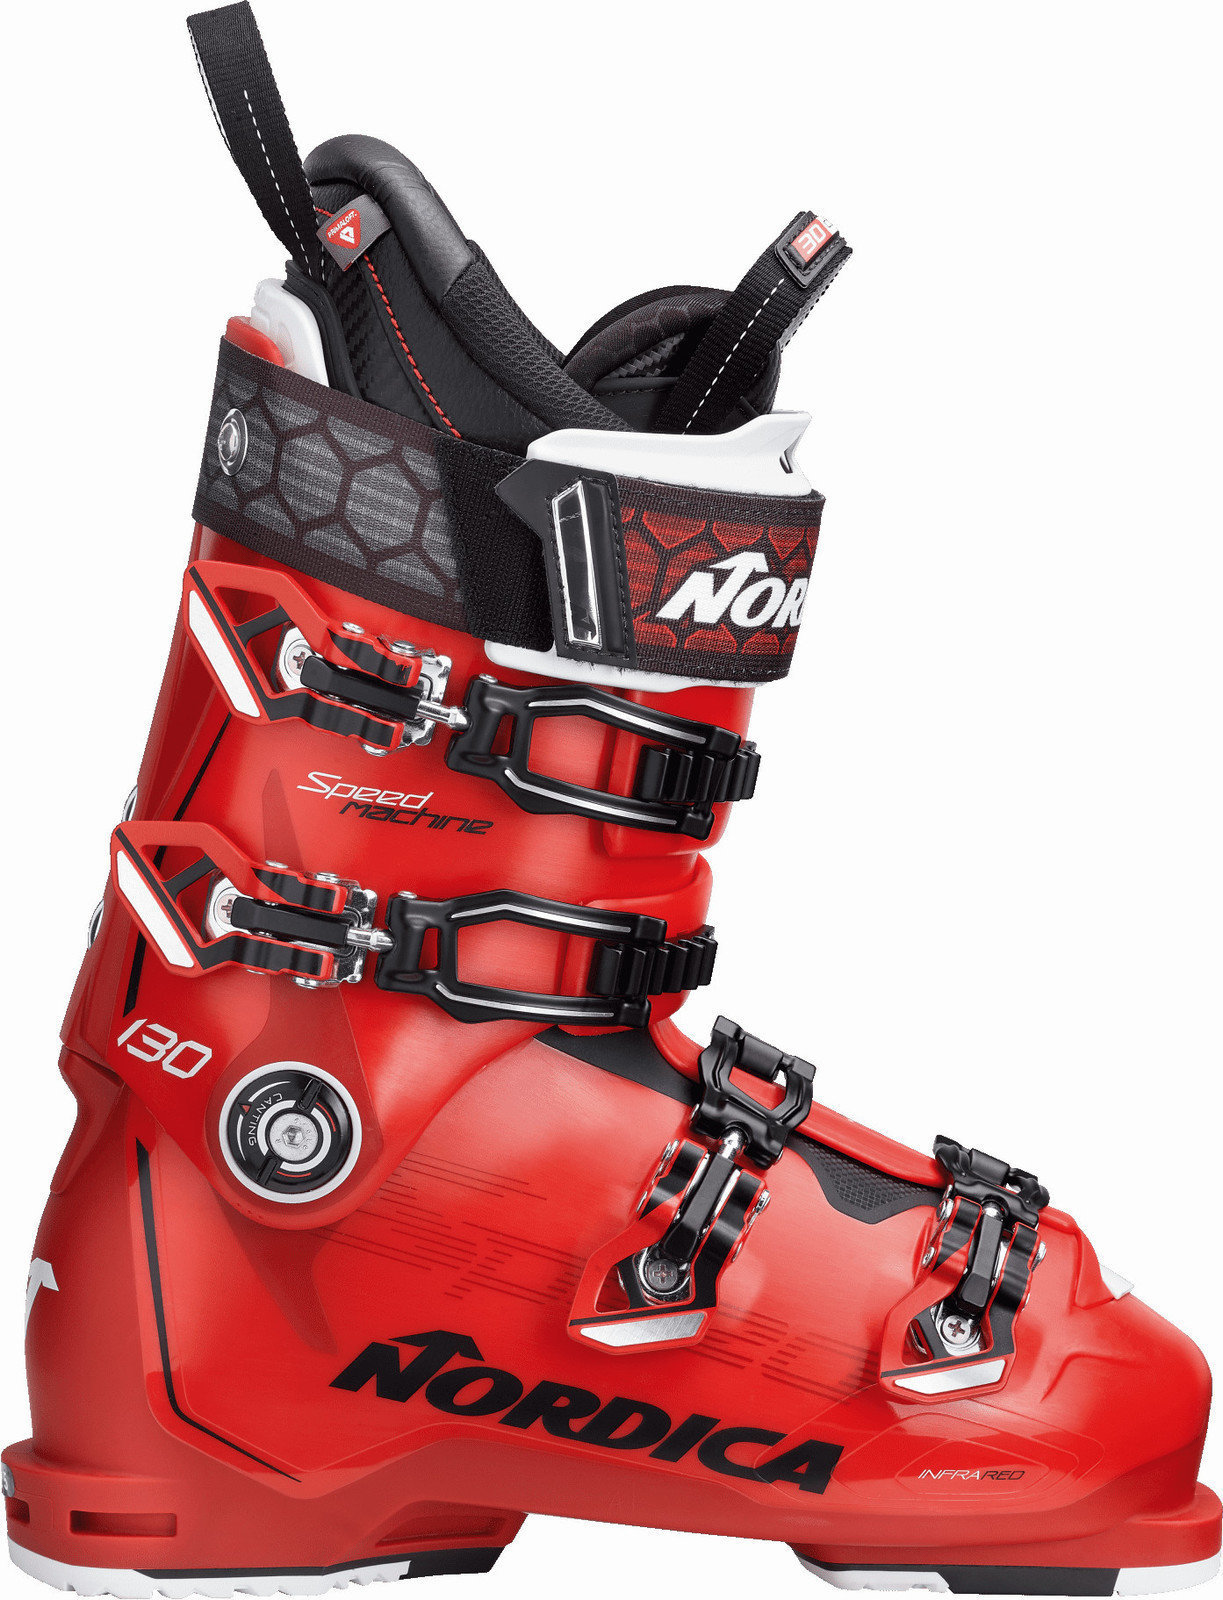 Μπότες Σκι Alpine Nordica Speedmachine 130 Red-Black-White 29 18/19